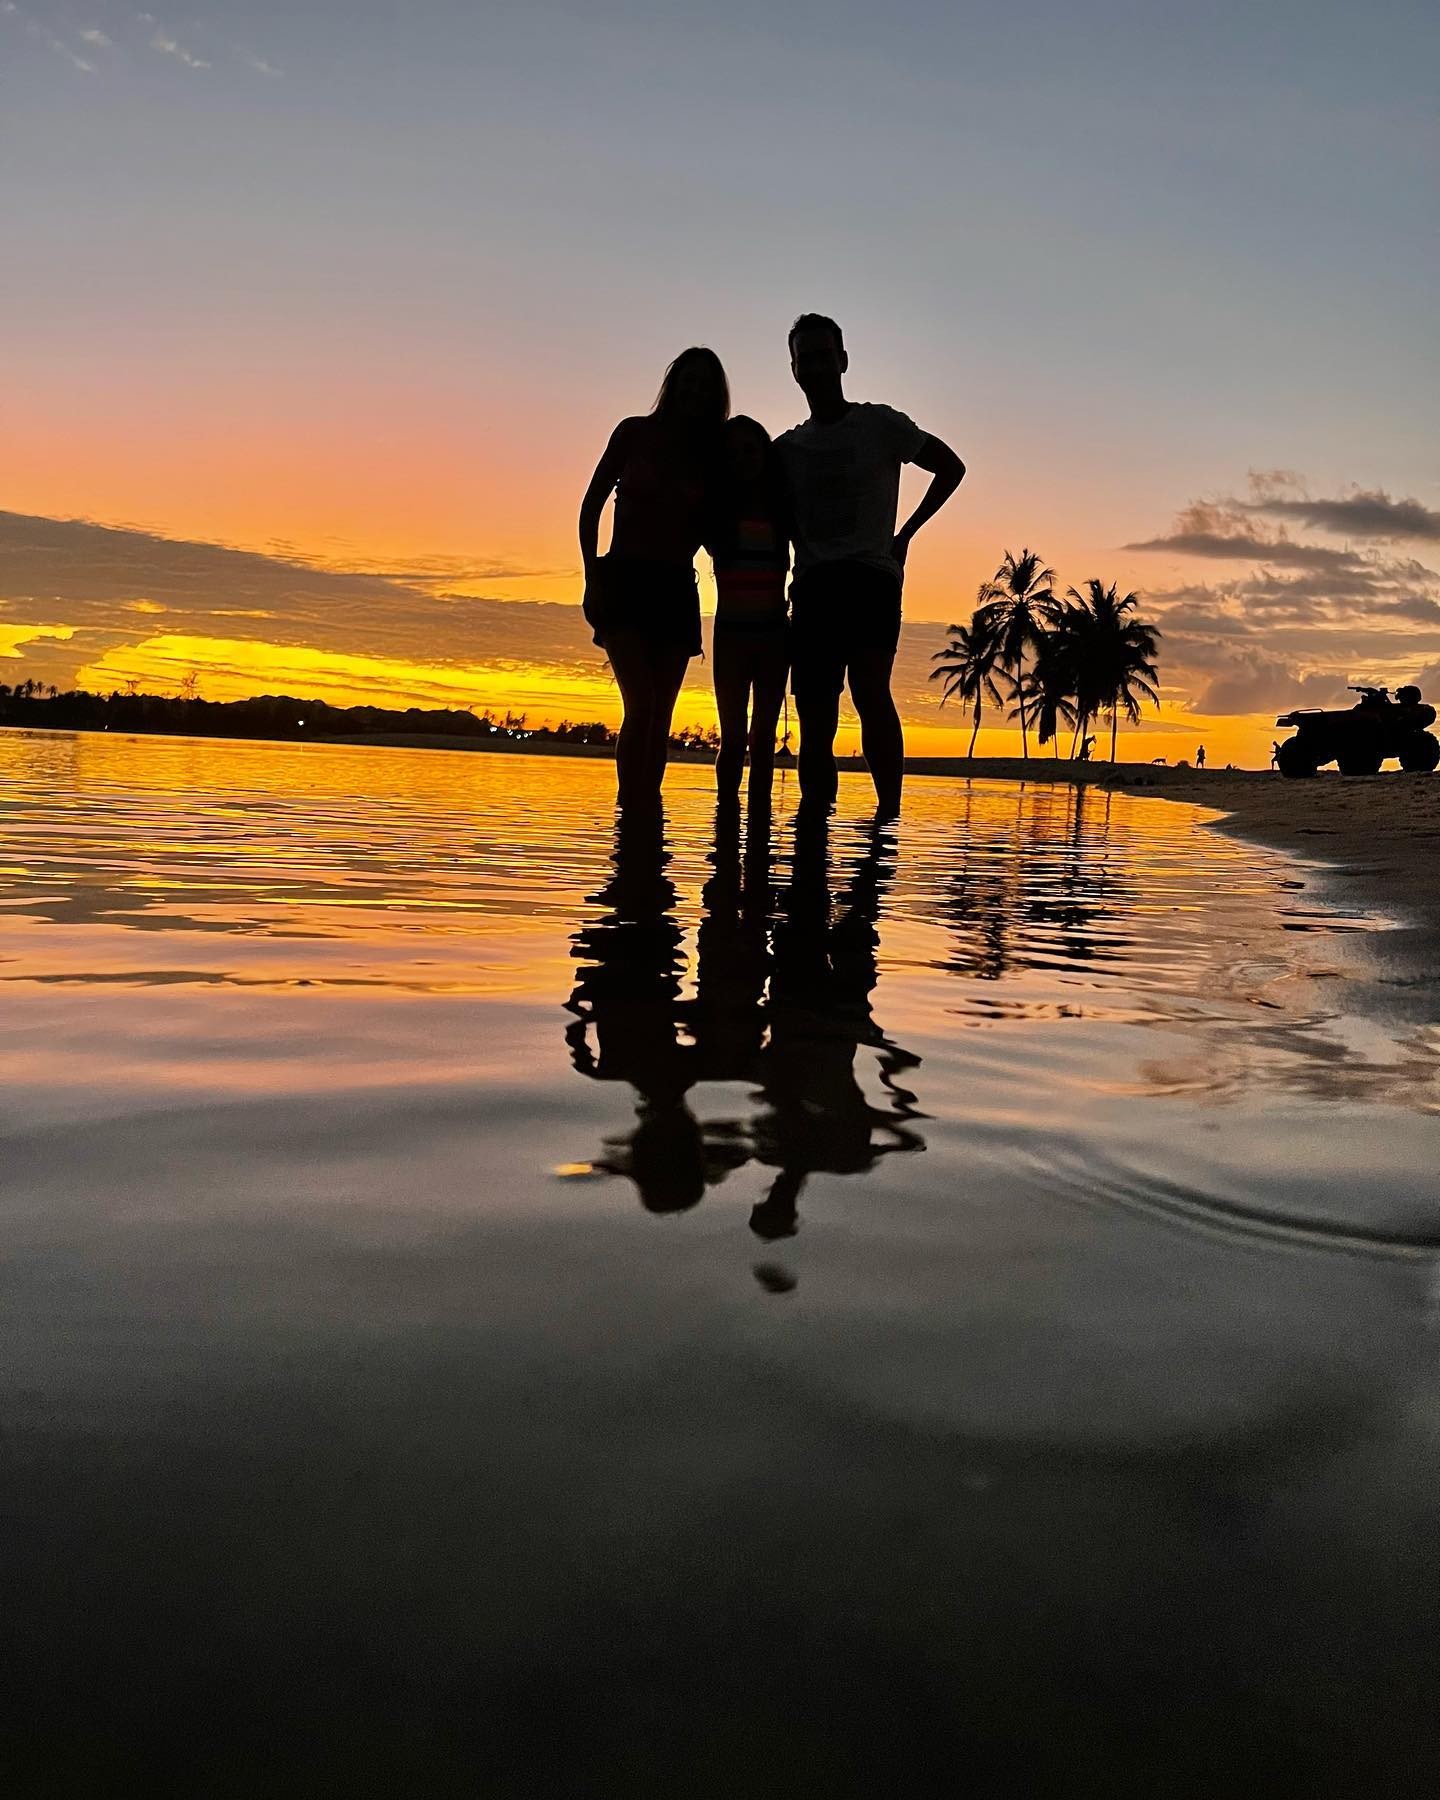 Ticiane Pinheiro e Cesar Tralli curtem praia do Ceará com Rafaella Justus e Manuella (Foto: Reprodução/Instagram)